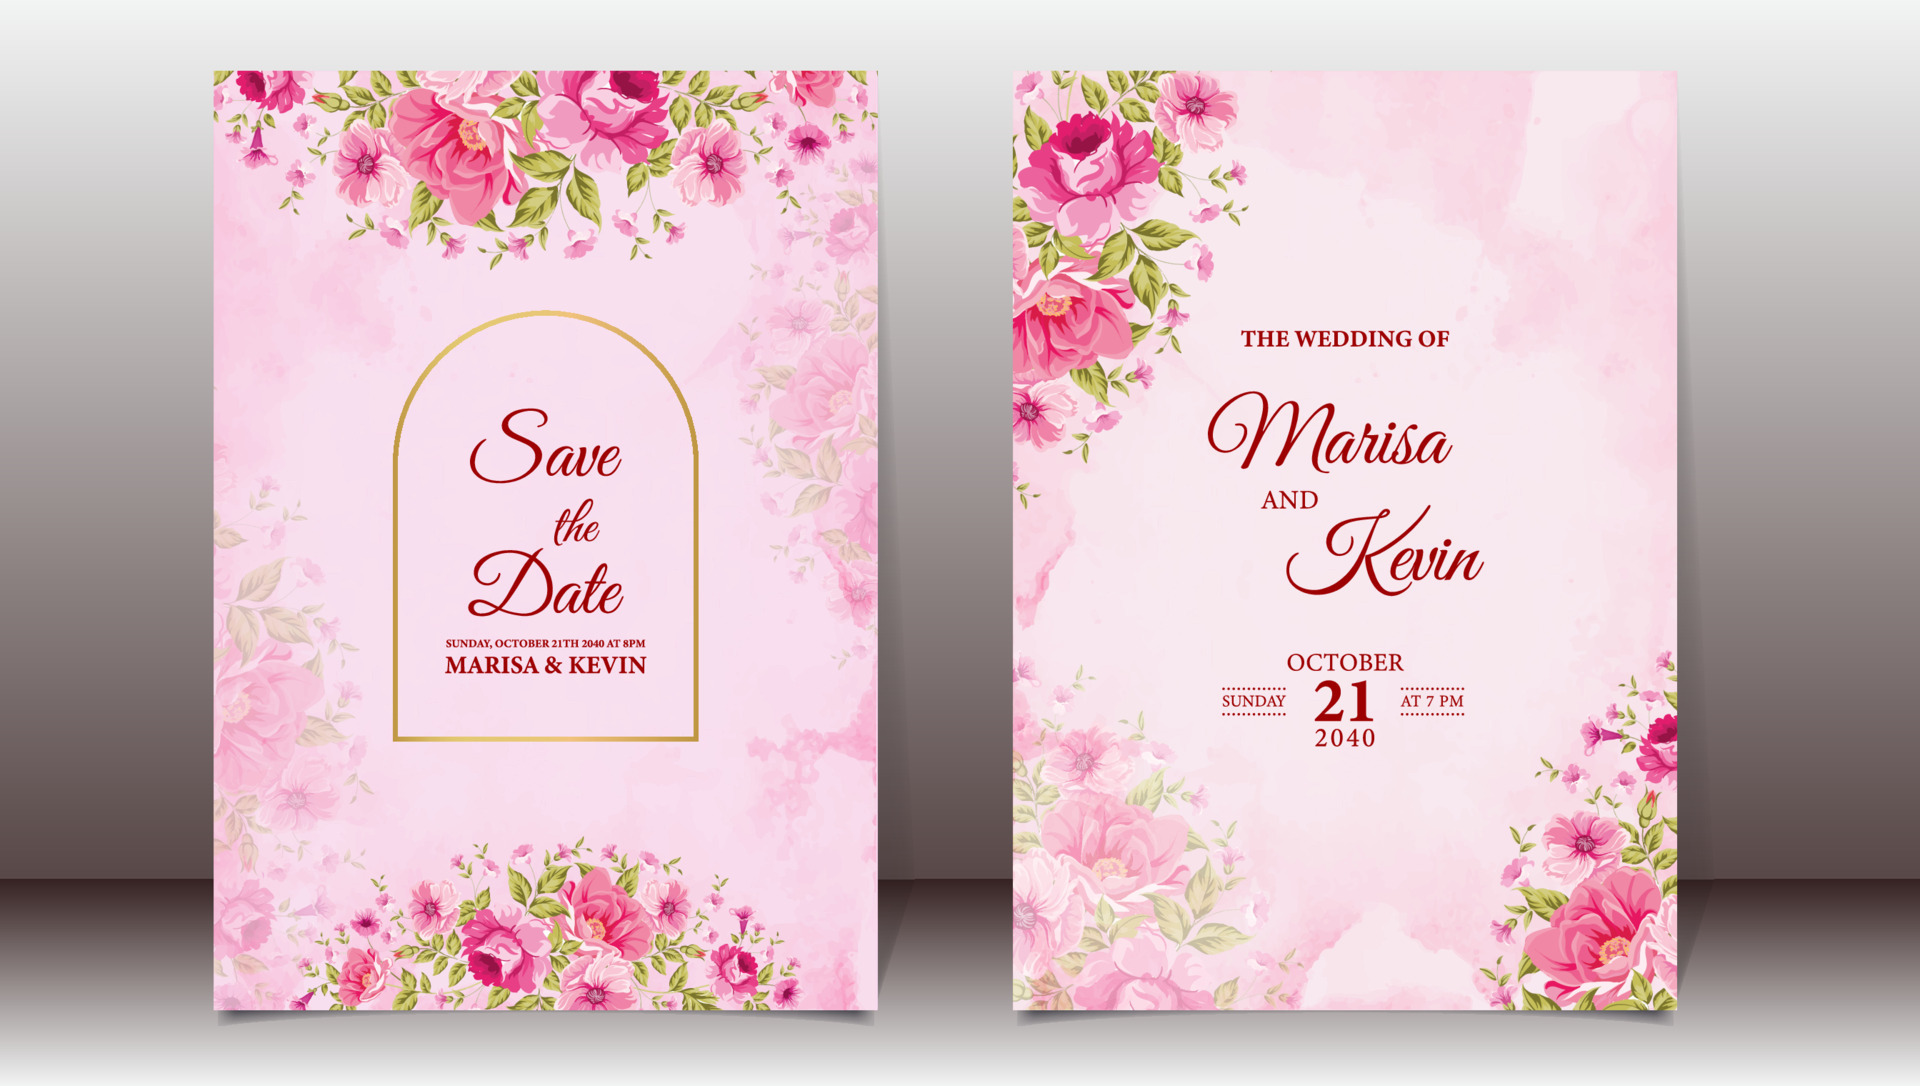 Mẫu thiệp cưới màu hồng họa tiết hoa sang trọng với kỹ thuật nước được lấy cảm hứng từ những lọ hoa tươi đầy sắc màu chắc chắn sẽ khiến bạn mê mẩn. Thiết kế tinh tế cùng với kỹ thuật nước trang trí làm nên sự hài hòa hoàn hảo giữa họa tiết hoa và gam màu hồng nửa.